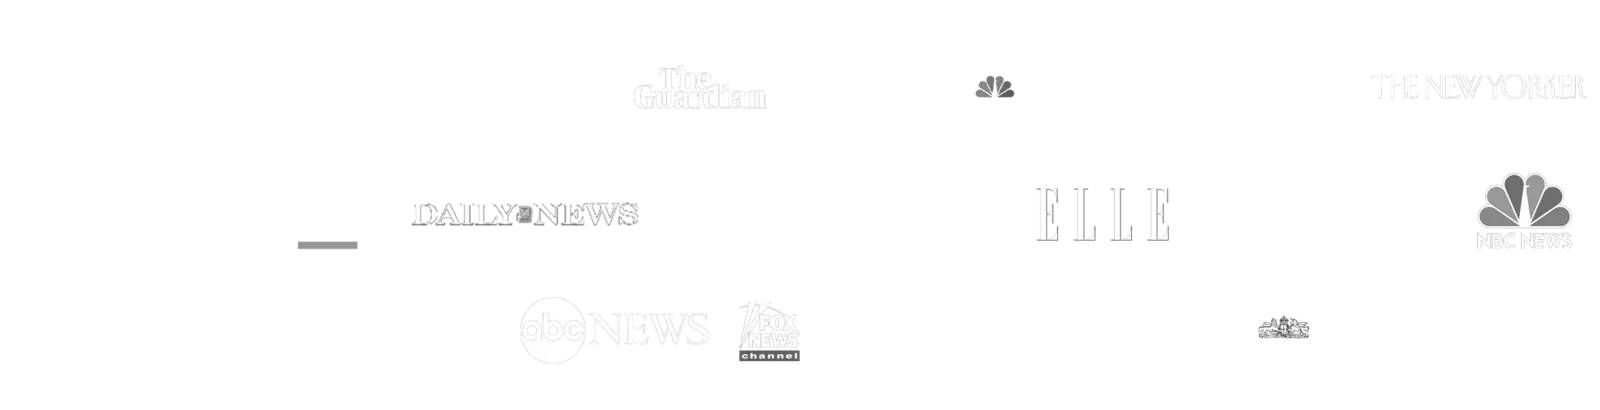 News logos